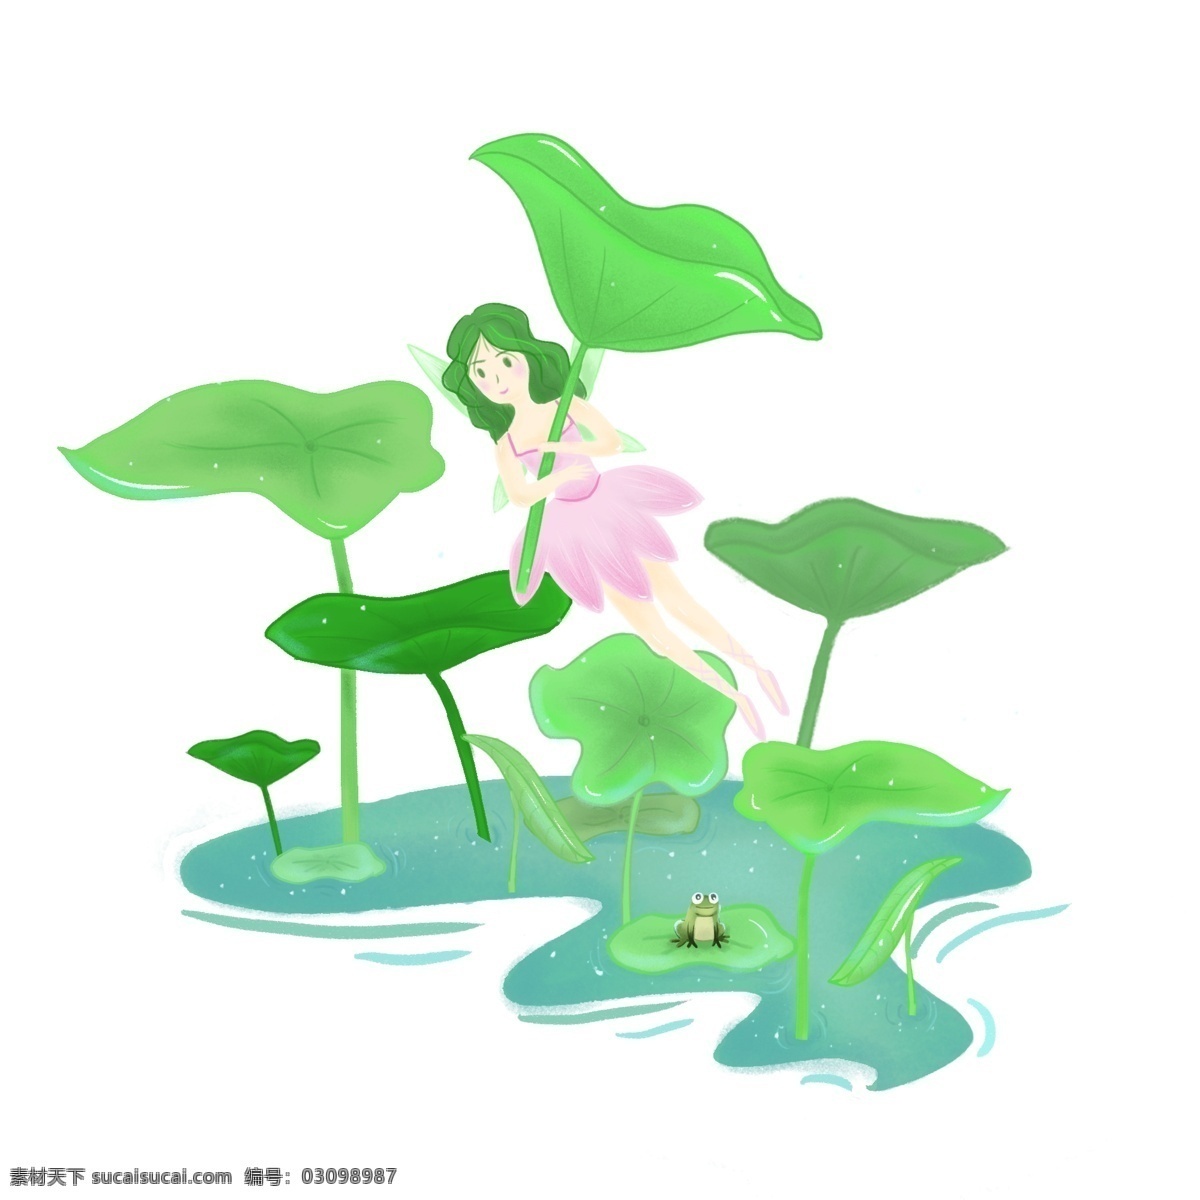 夏天 举 荷花 伞 仙子 荷叶 荷塘 青蛙 手绘 卡通 可爱 粉色 绿色